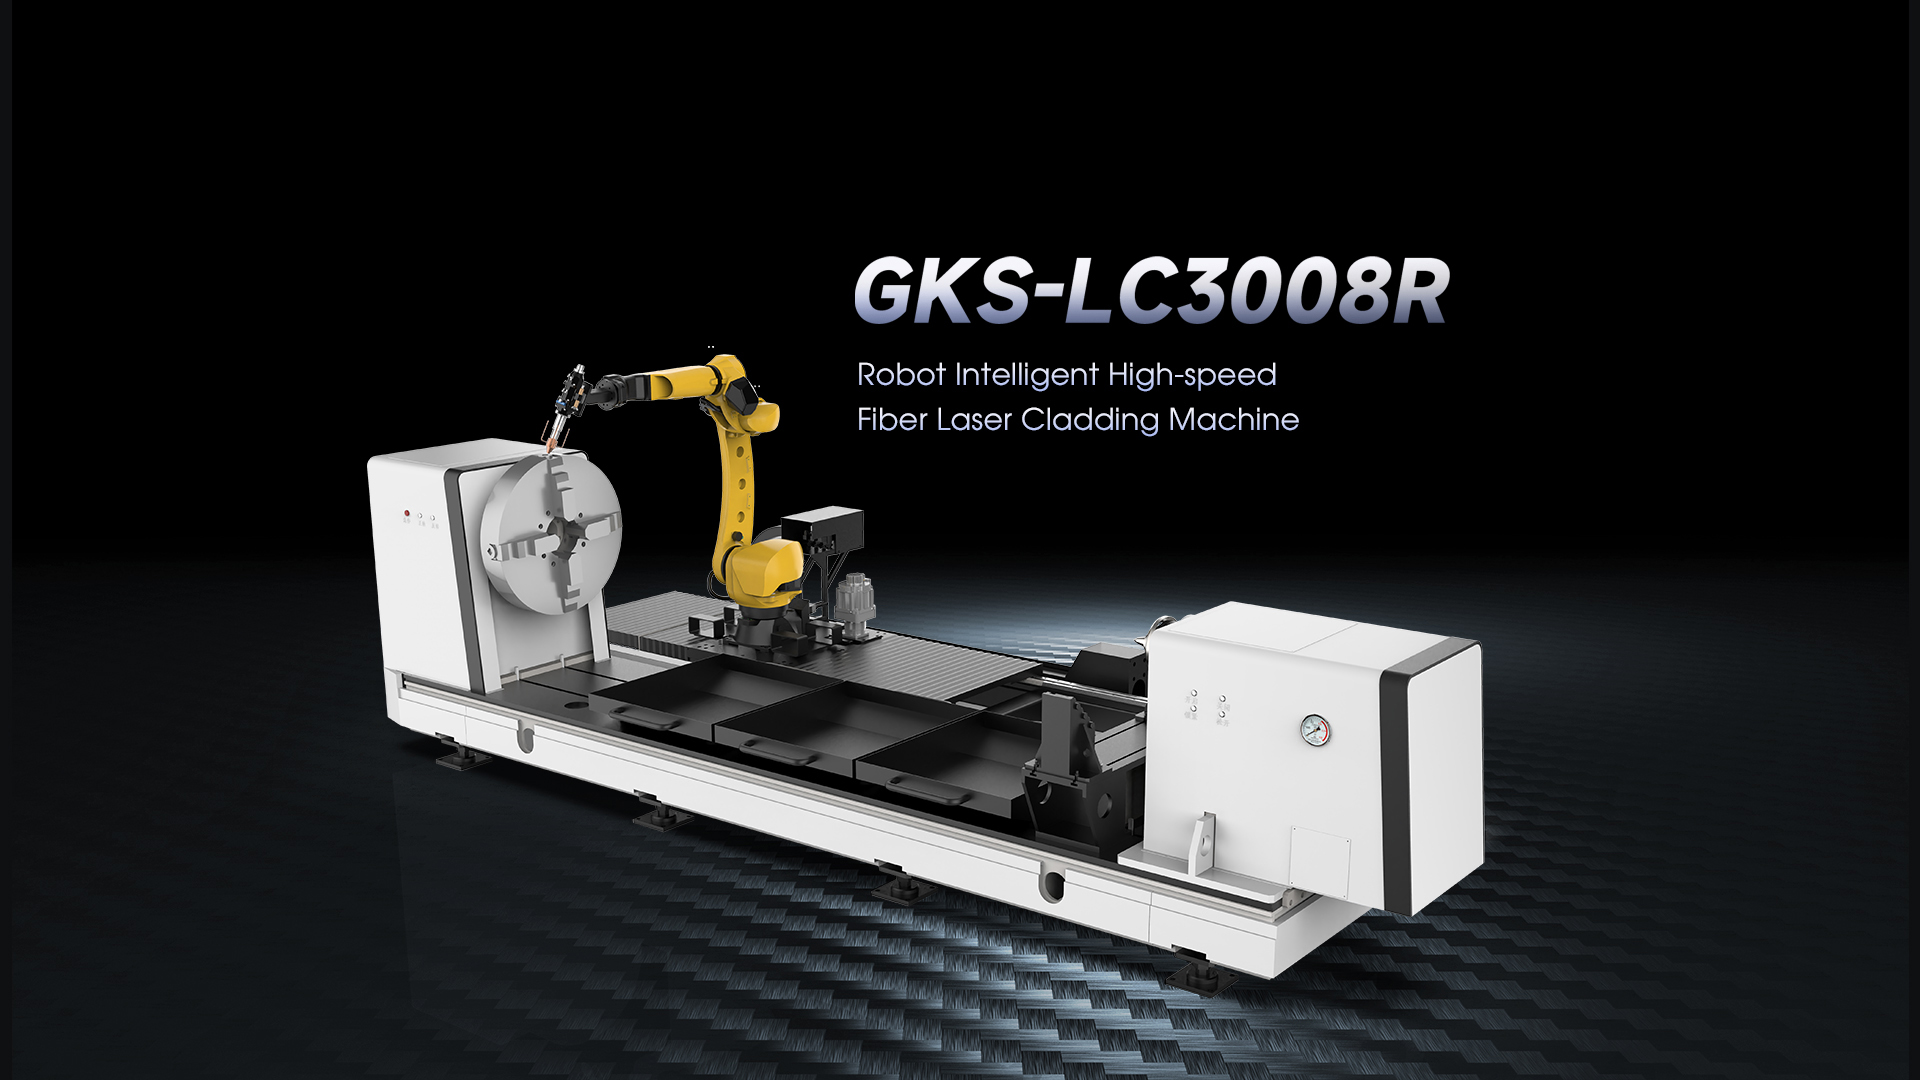 GKS-LC3008R Robot Intelligent High-speed Fiber Laser Cladding Machine